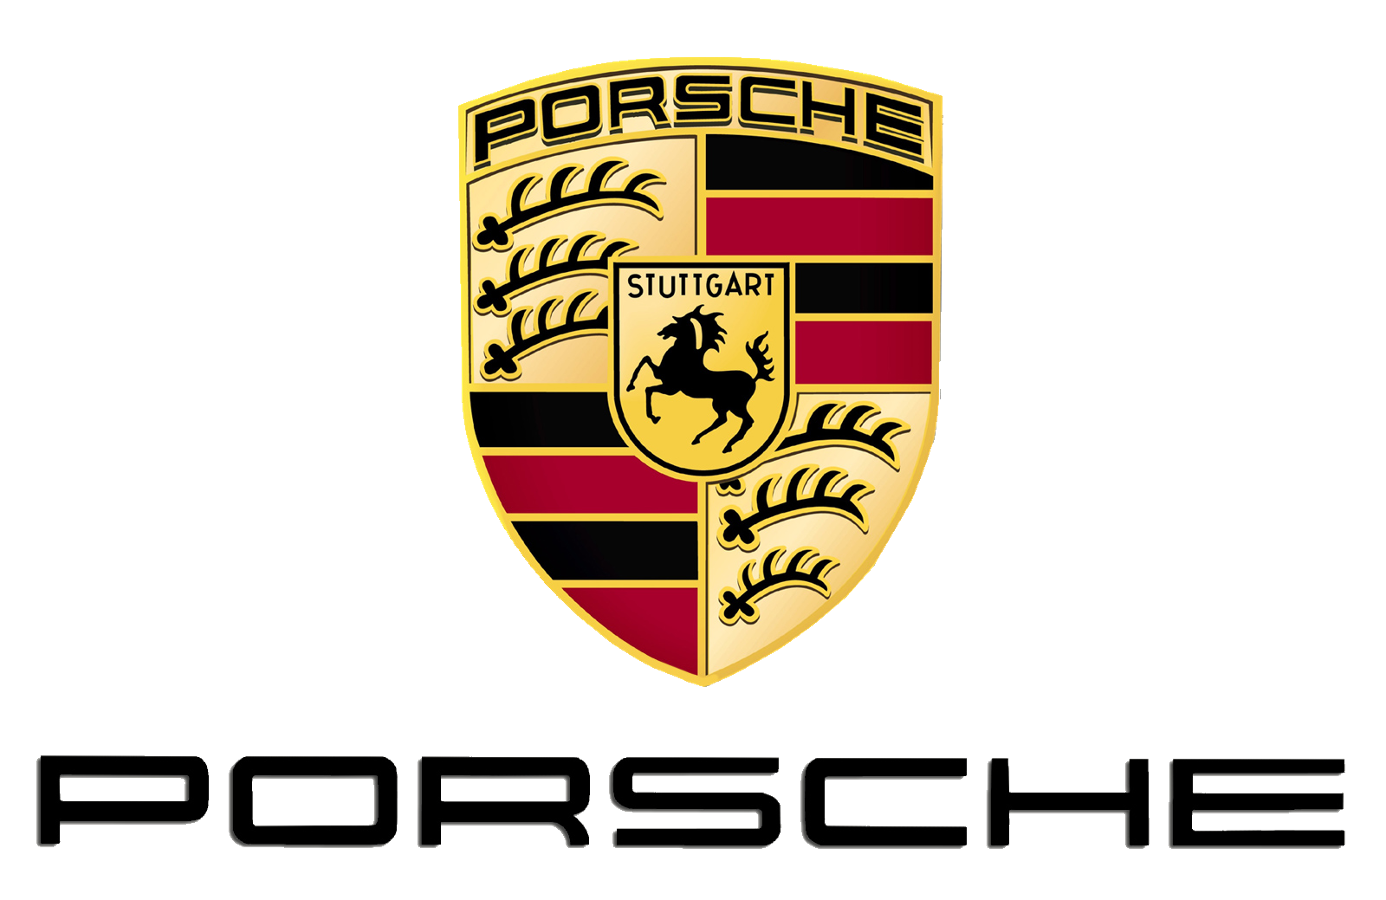 Porsche Center Borås